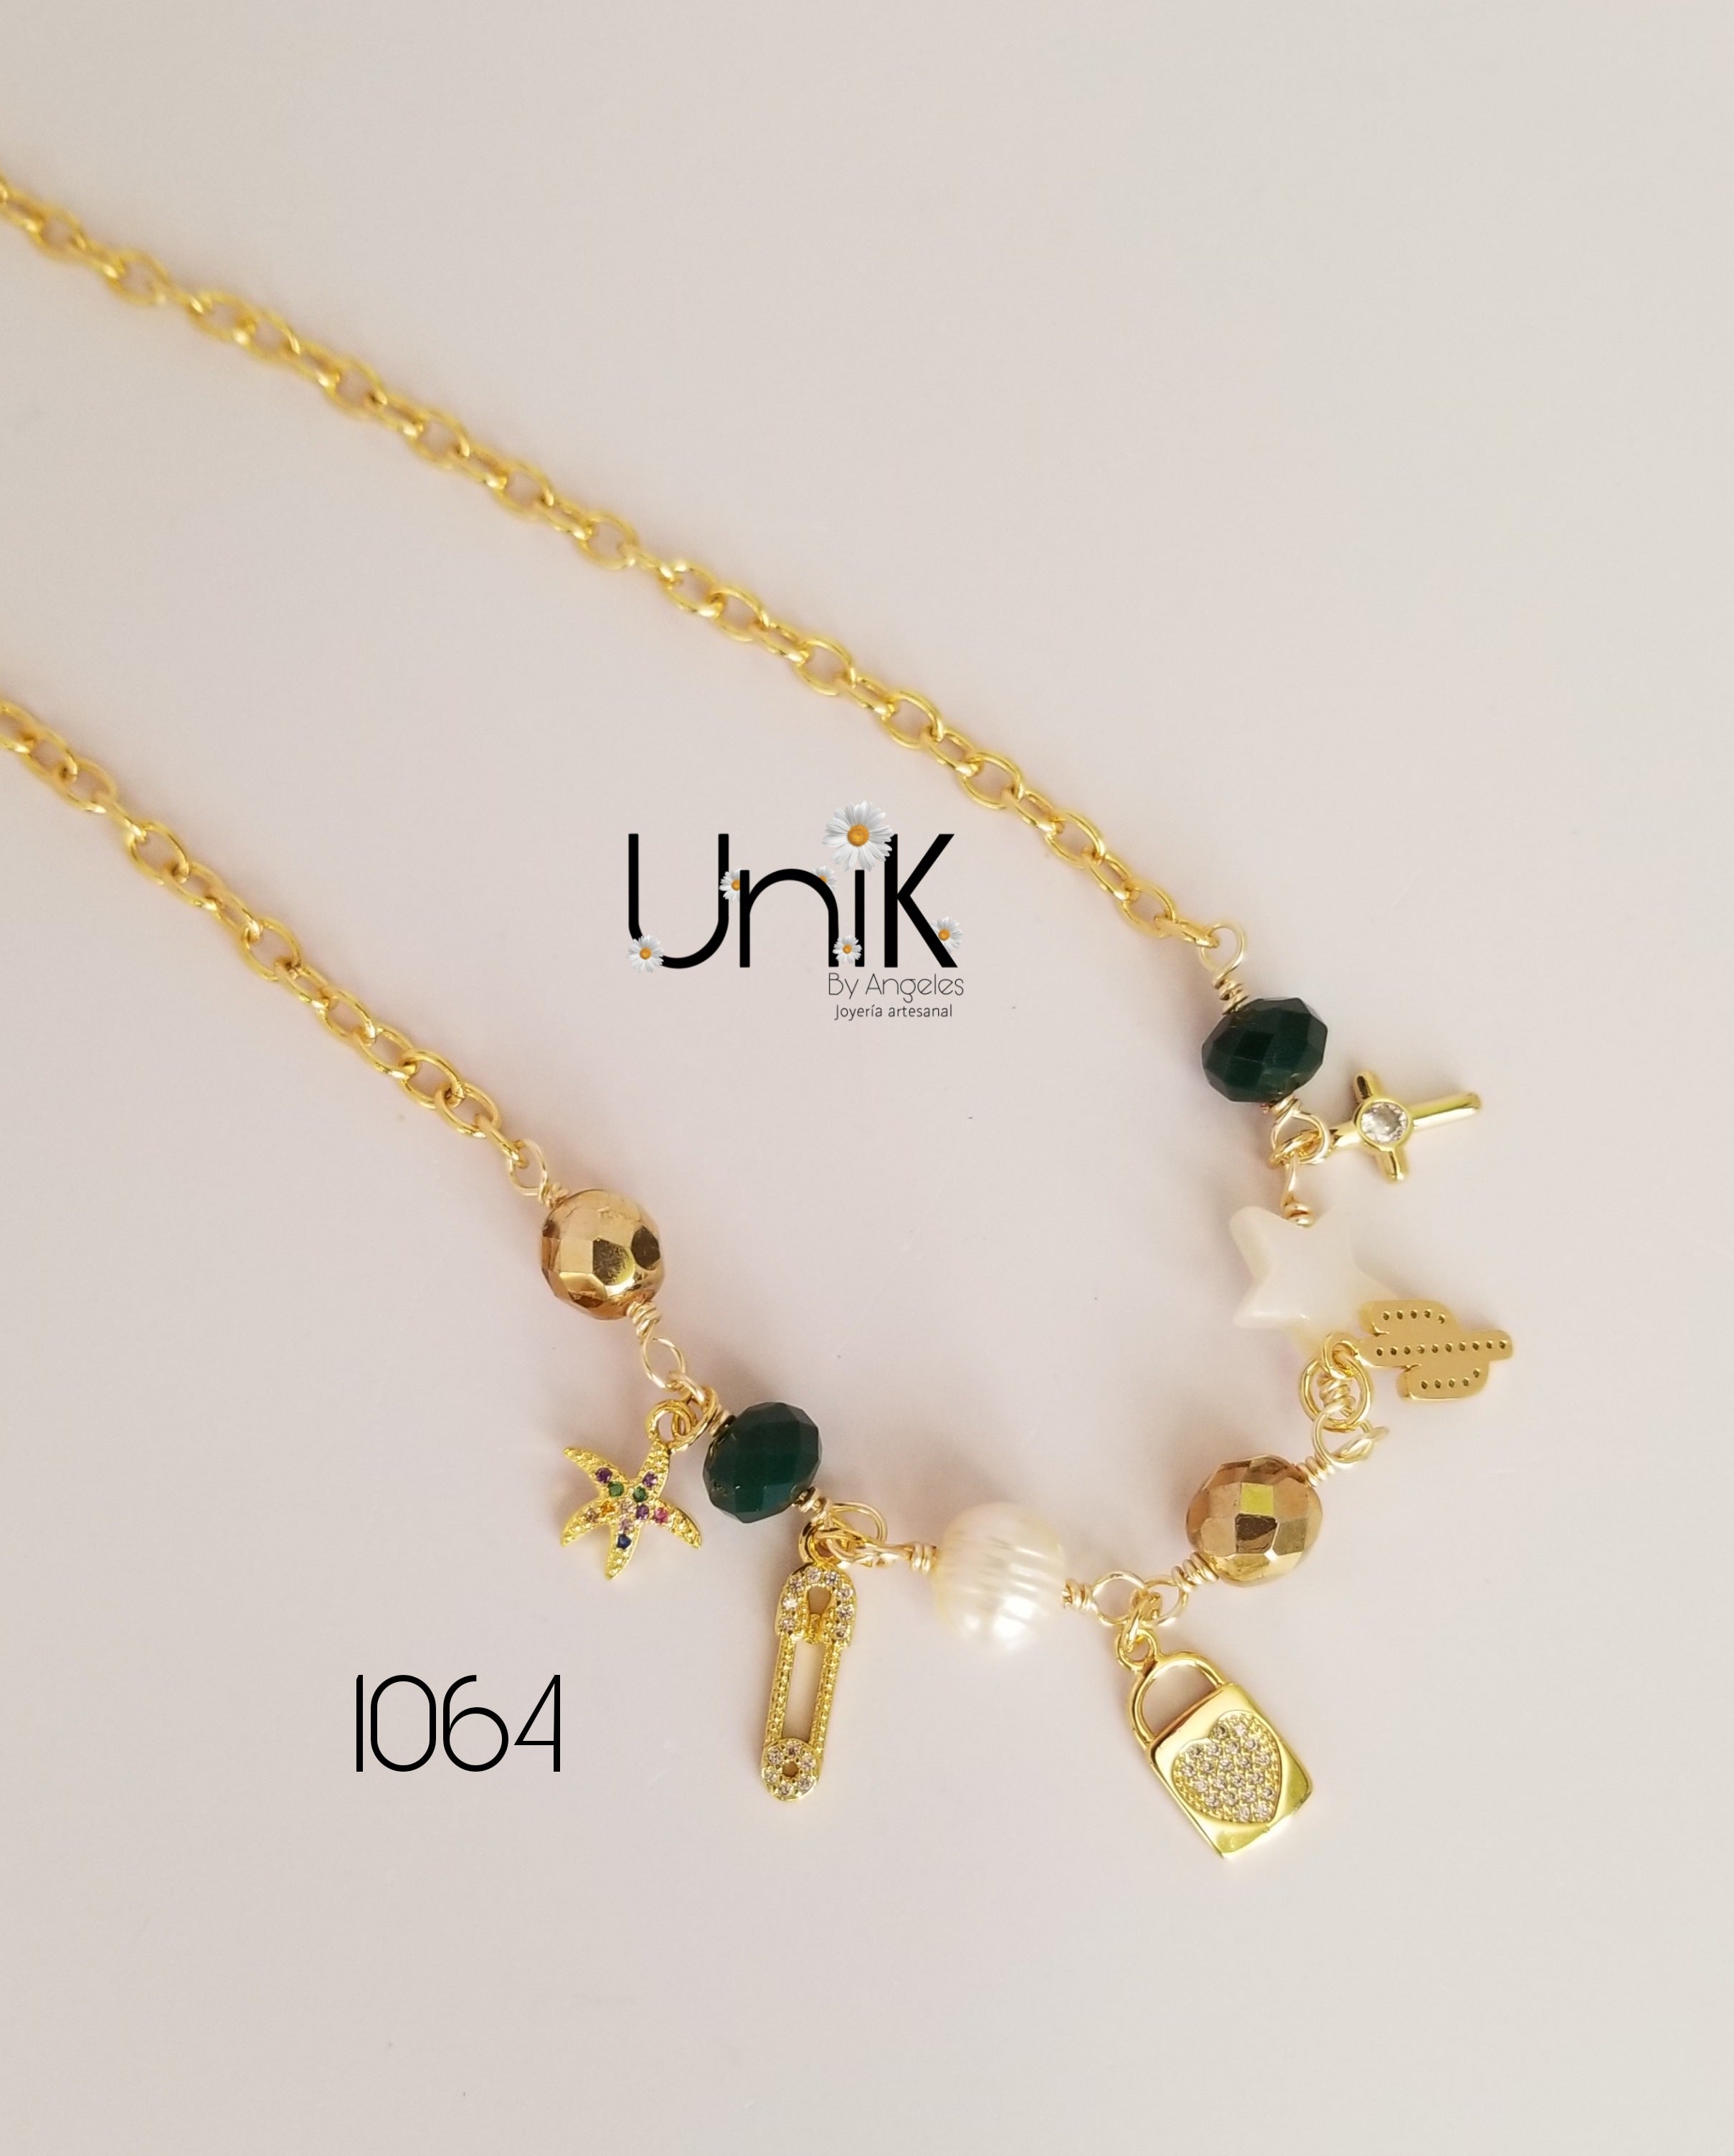 Unik 1064